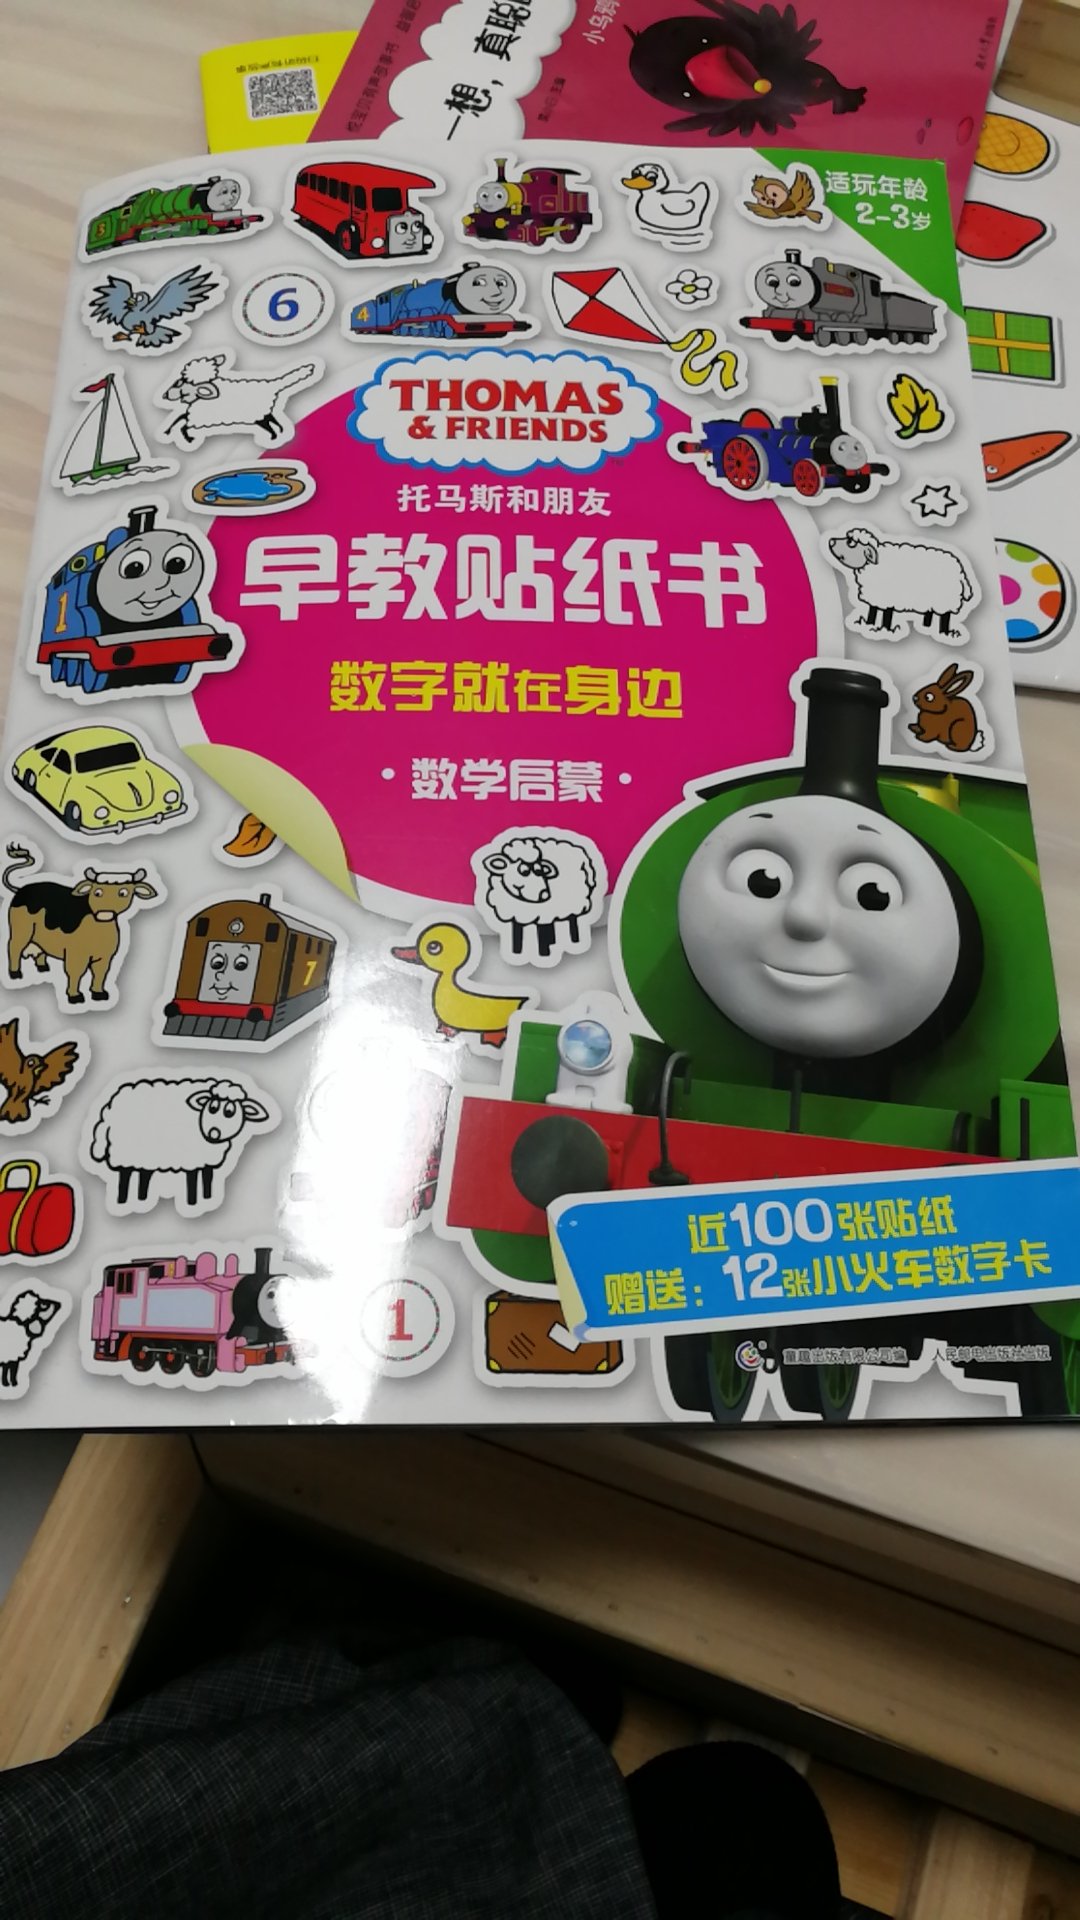 书的质量挺好的，小孩也很喜欢火车，这几天都在看这套书。